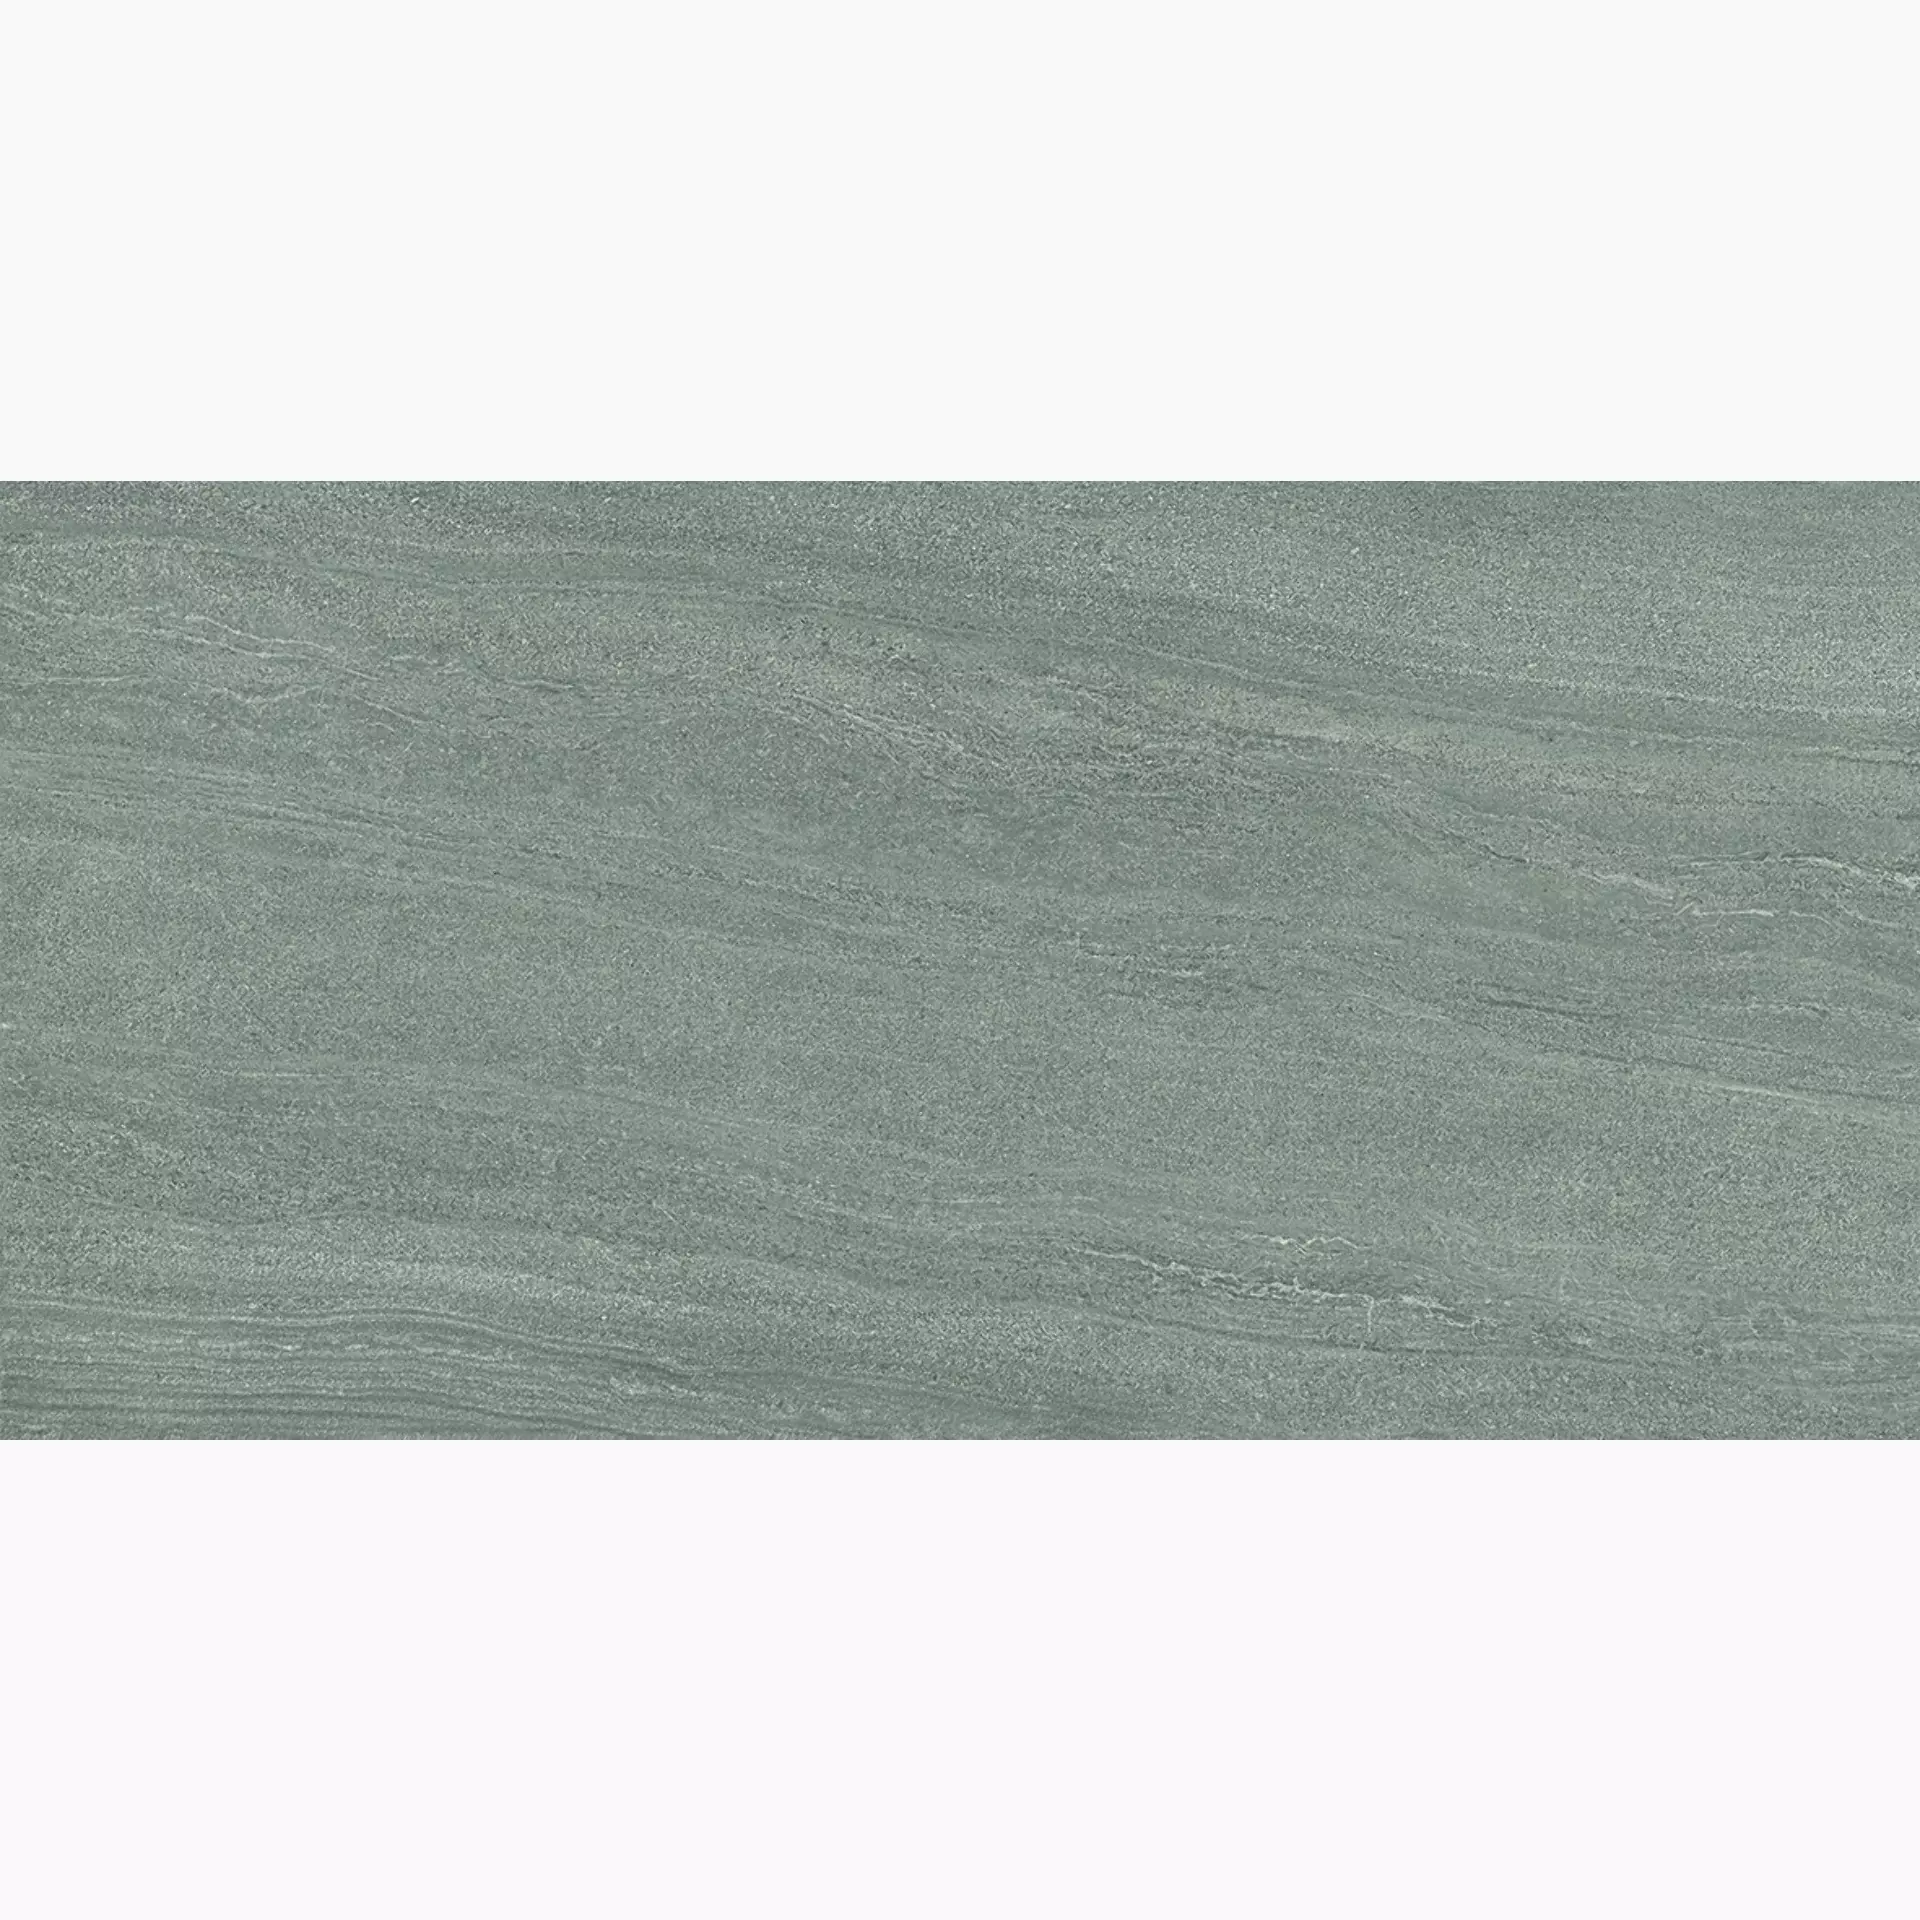 Ergon Elegance Pro Dark Grey Naturale Dark Grey EJZ0 natur 60x120cm rektifiziert 9,5mm